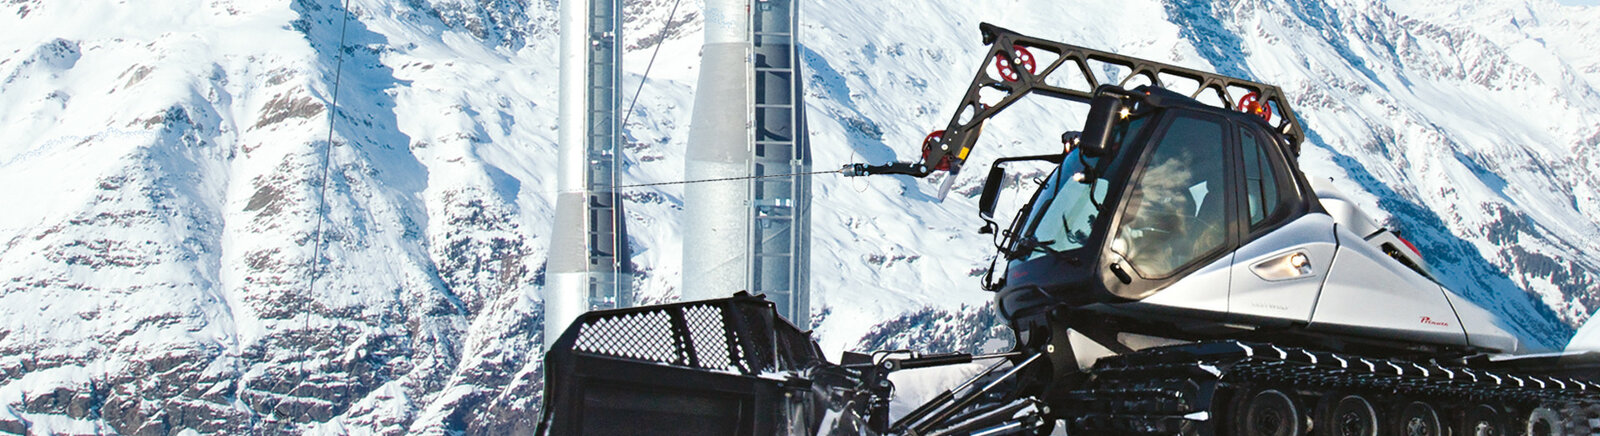 Дата выхода Ski-World Simulator  на PC в России и во всем мире